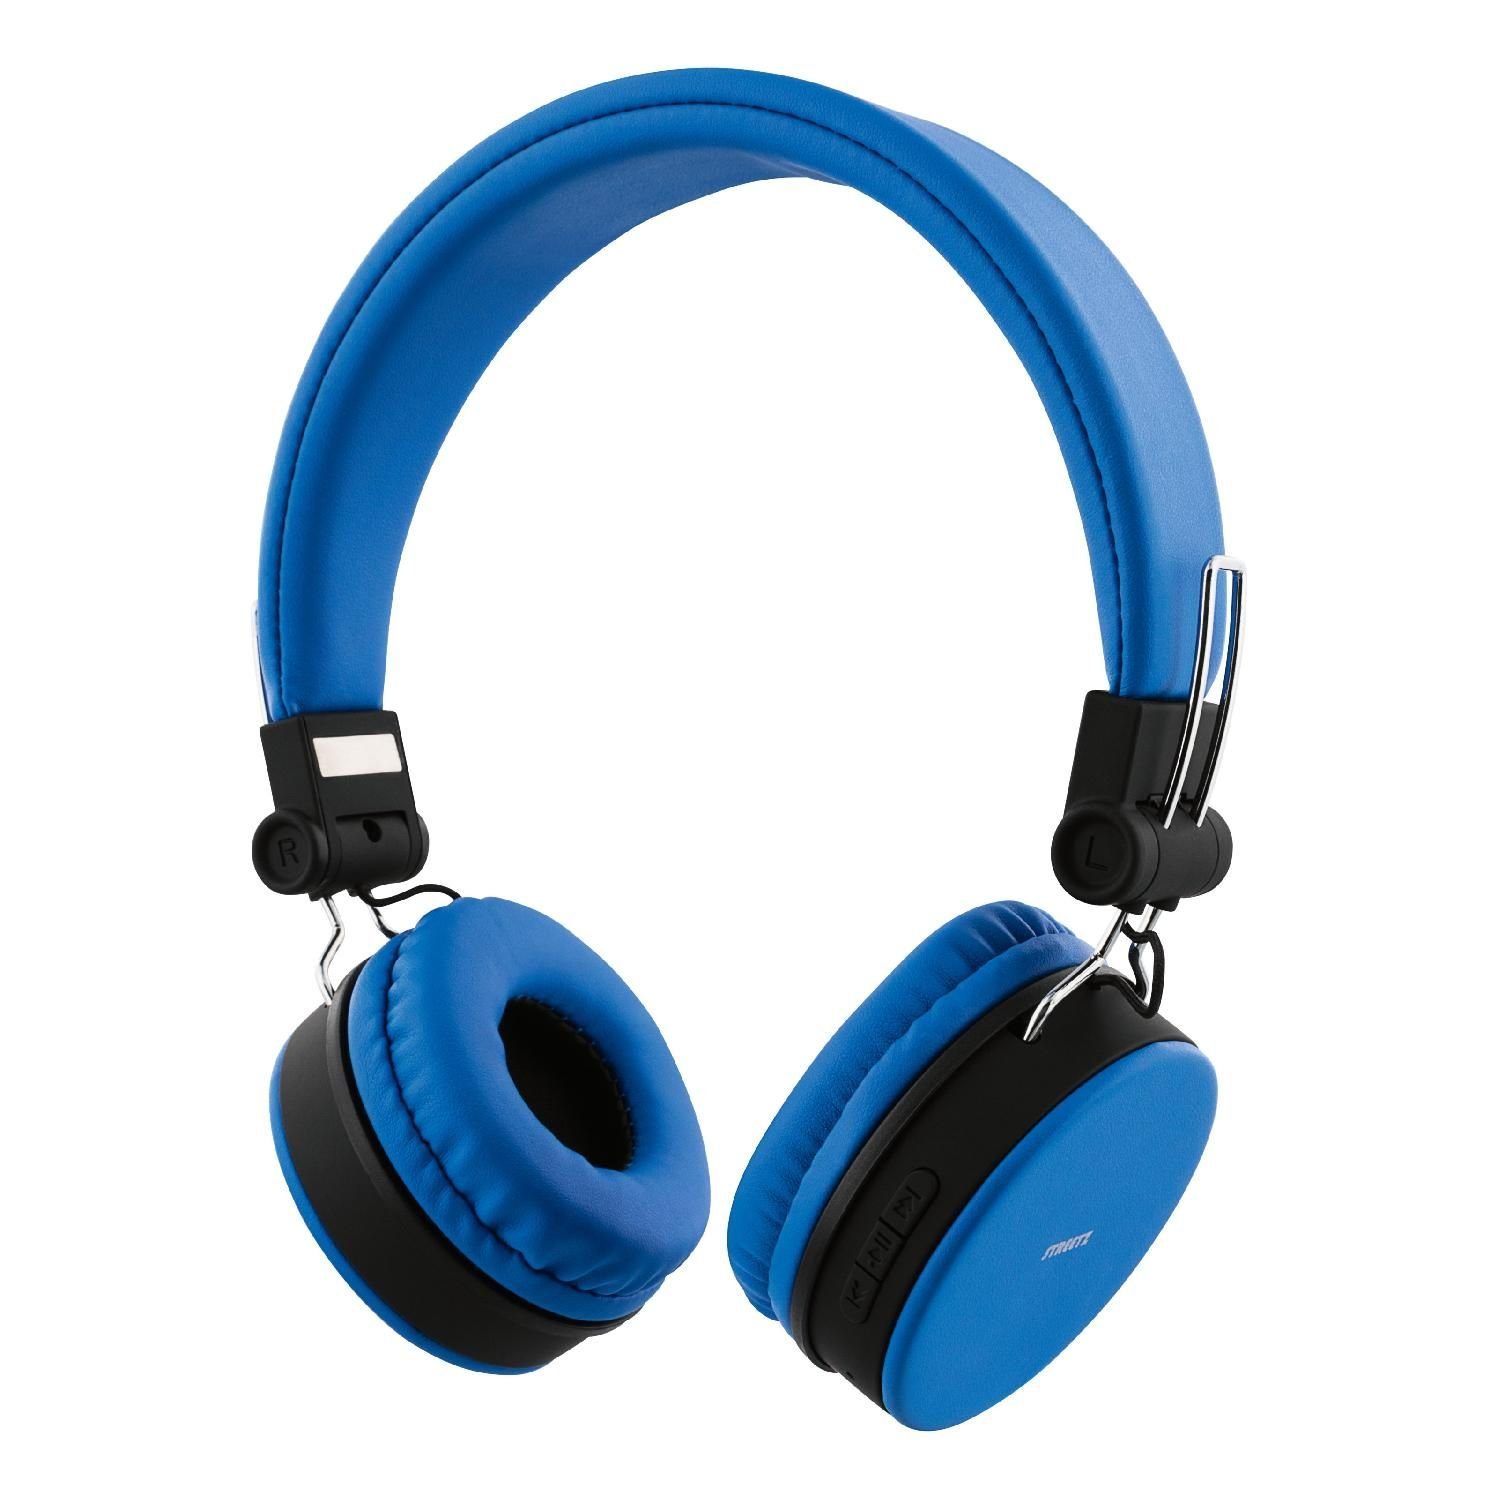 STREETZ Bluetooth Kopfhörer faltbar Mikrofon, Spielzeit AUX 22Std On-Ear (integriertes Freisprecheinrichtung bis blau Kopfhörer Kabel zu 5 Garantie) Jahre inkl. integrierter mit